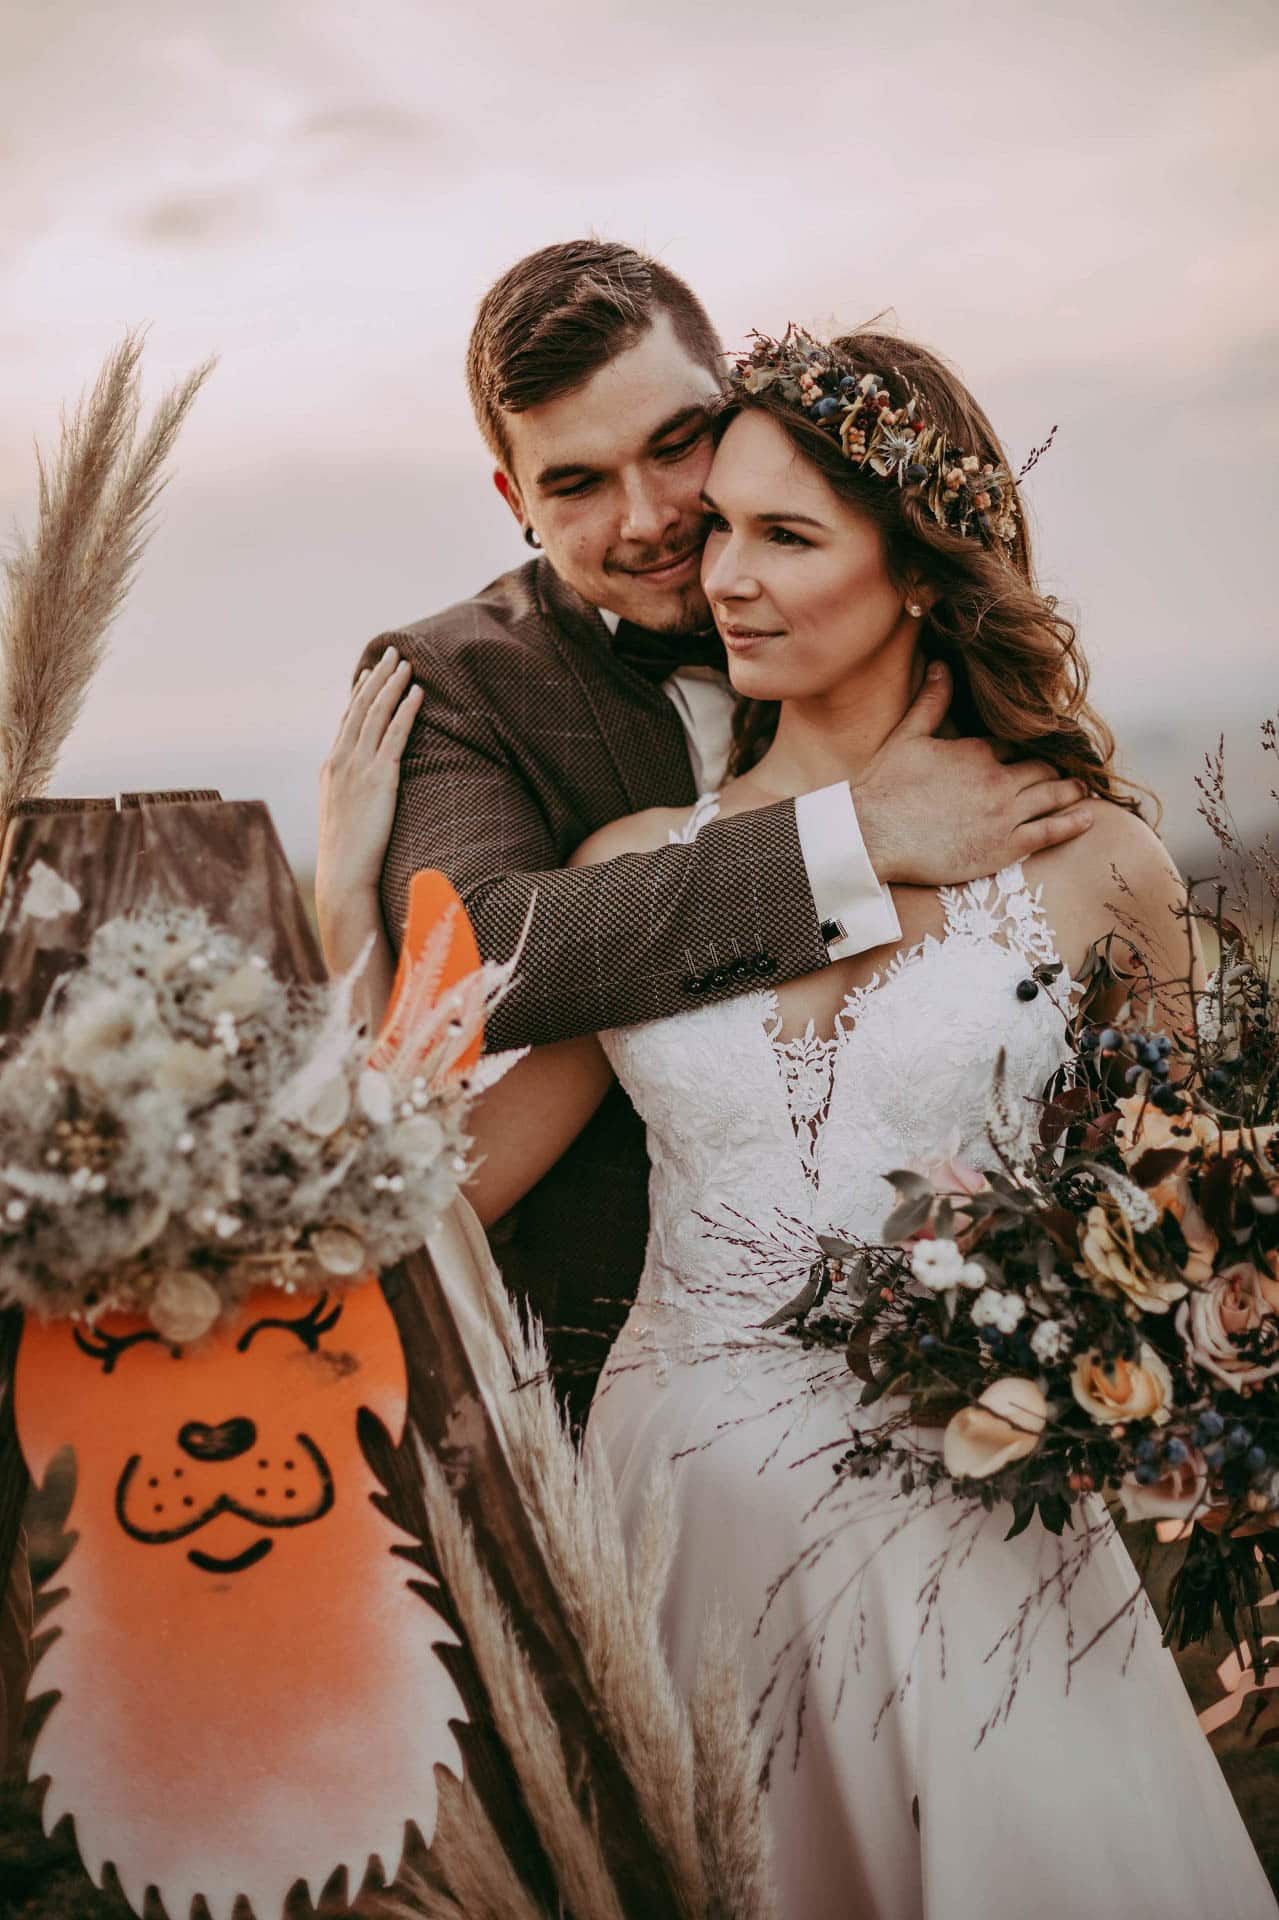 Brautpaar zur Hippie Hochzeit mit toller Blumendeko